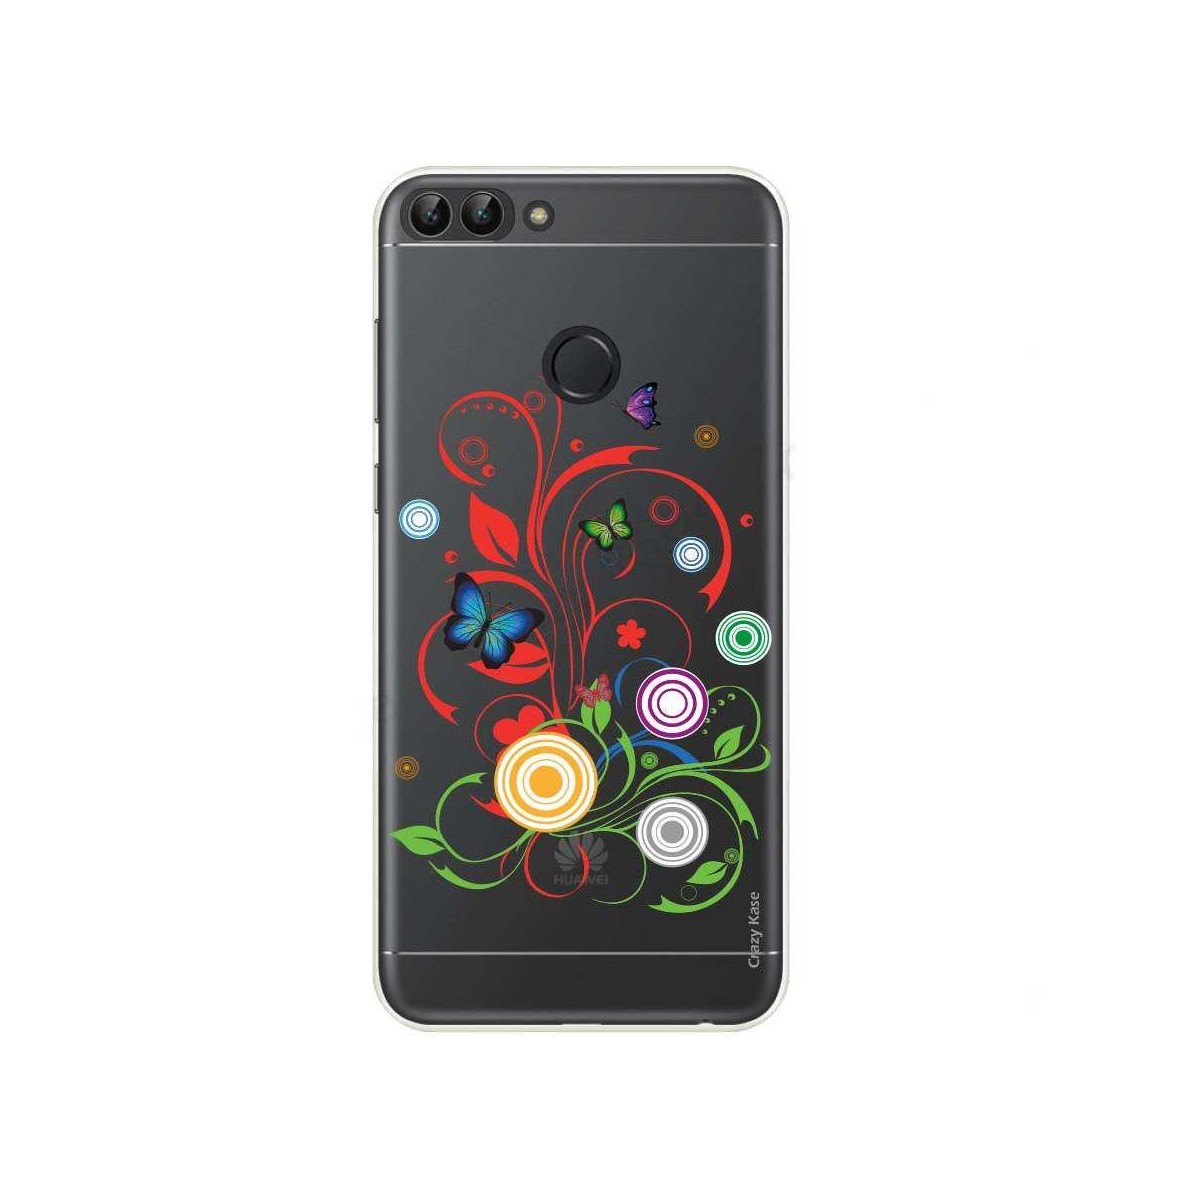 Coque Huawei P Smart souple motif Papillons et Cercles - Crazy Kase